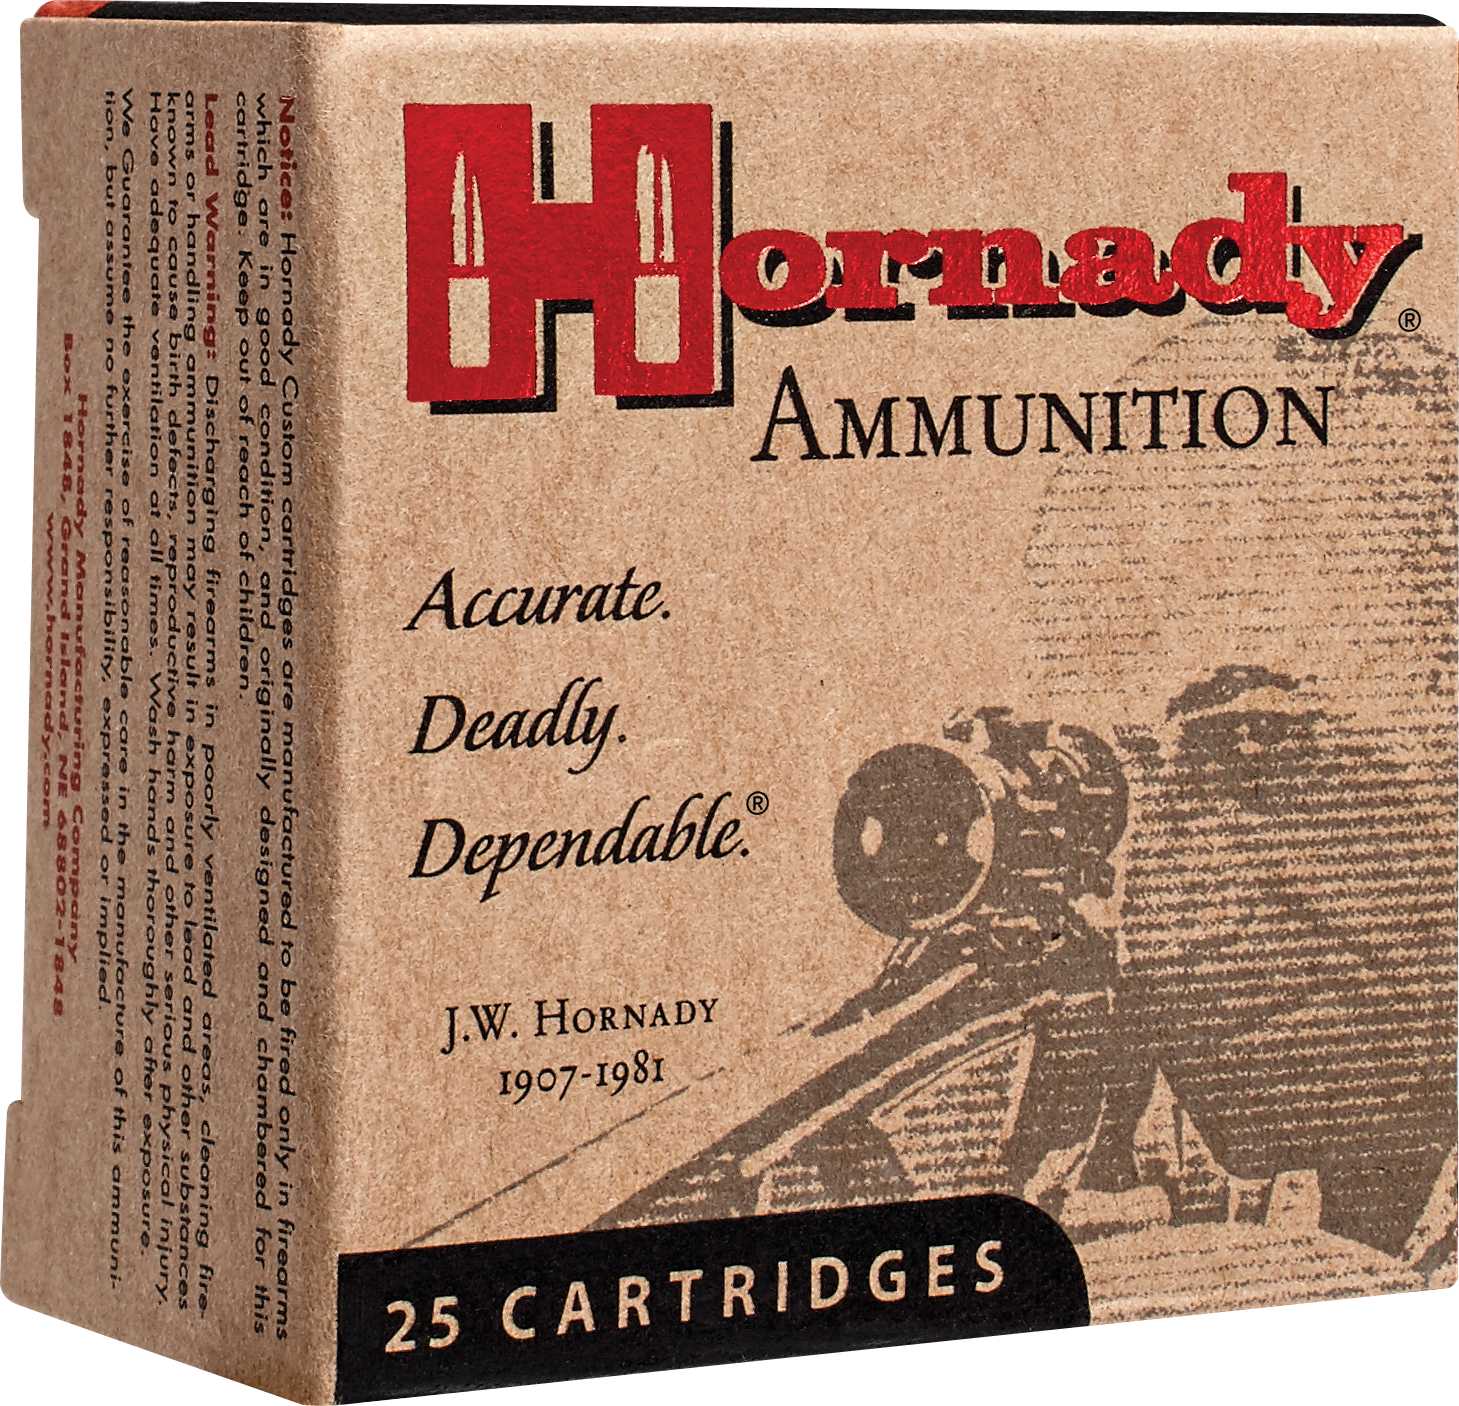 9mm Luger 25 Rounds Ammunition Hornady 147 Grain Hollow Point